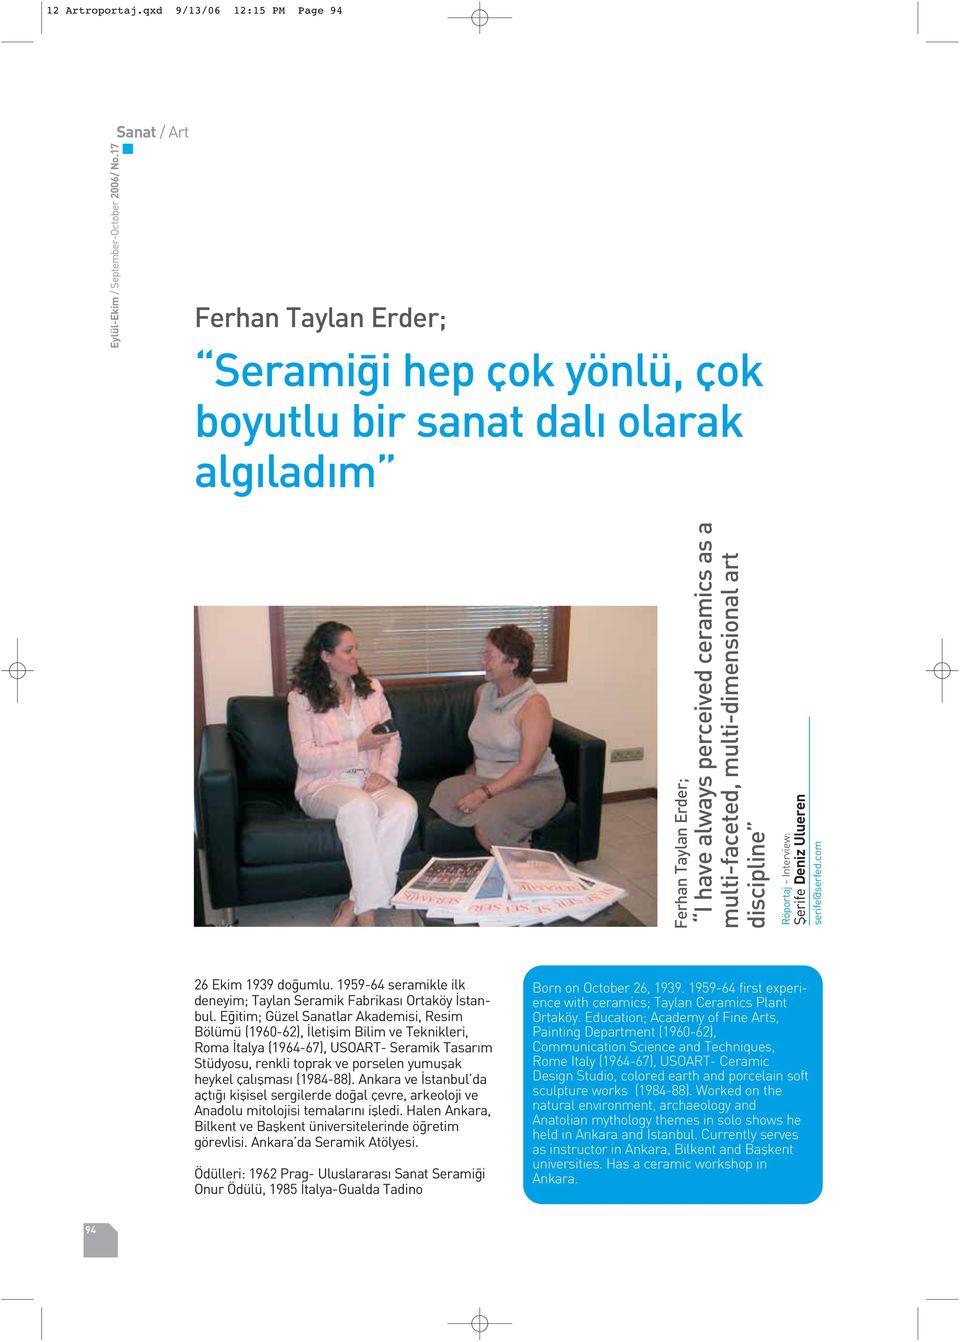 discipline Röportaj - Interview: fierife Deniz Ulueren serife@serfed.com 26 Ekim 1939 do umlu. 1959-64 seramikle ilk deneyim; Taylan Seramik Fabrikas Ortaköy stanbul.